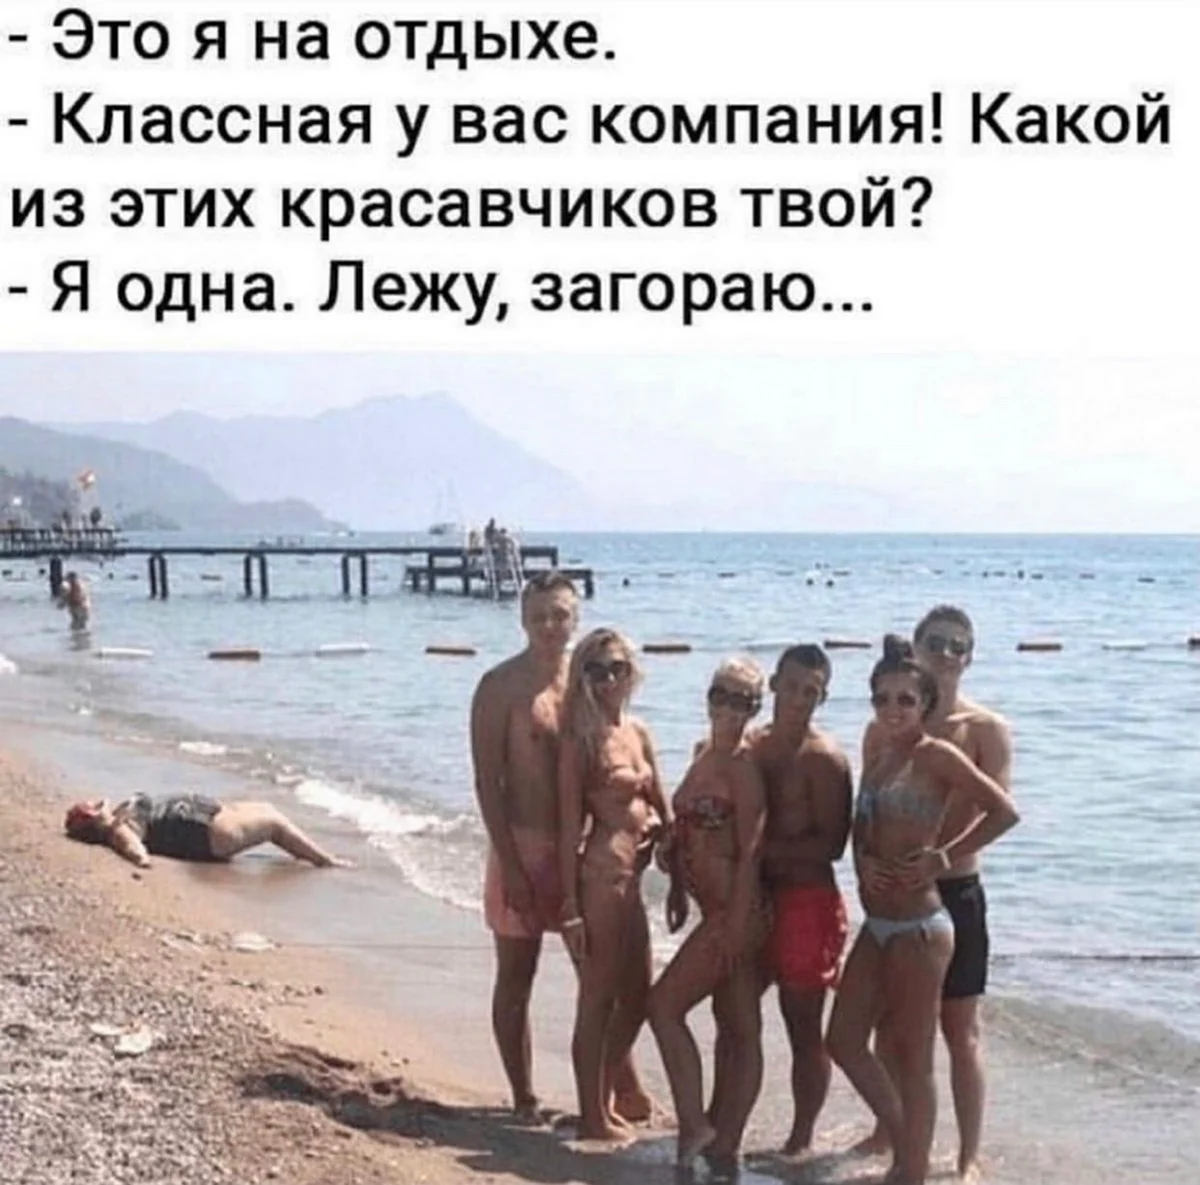 Мужчины на нудистком пляже. Прикольная картинка